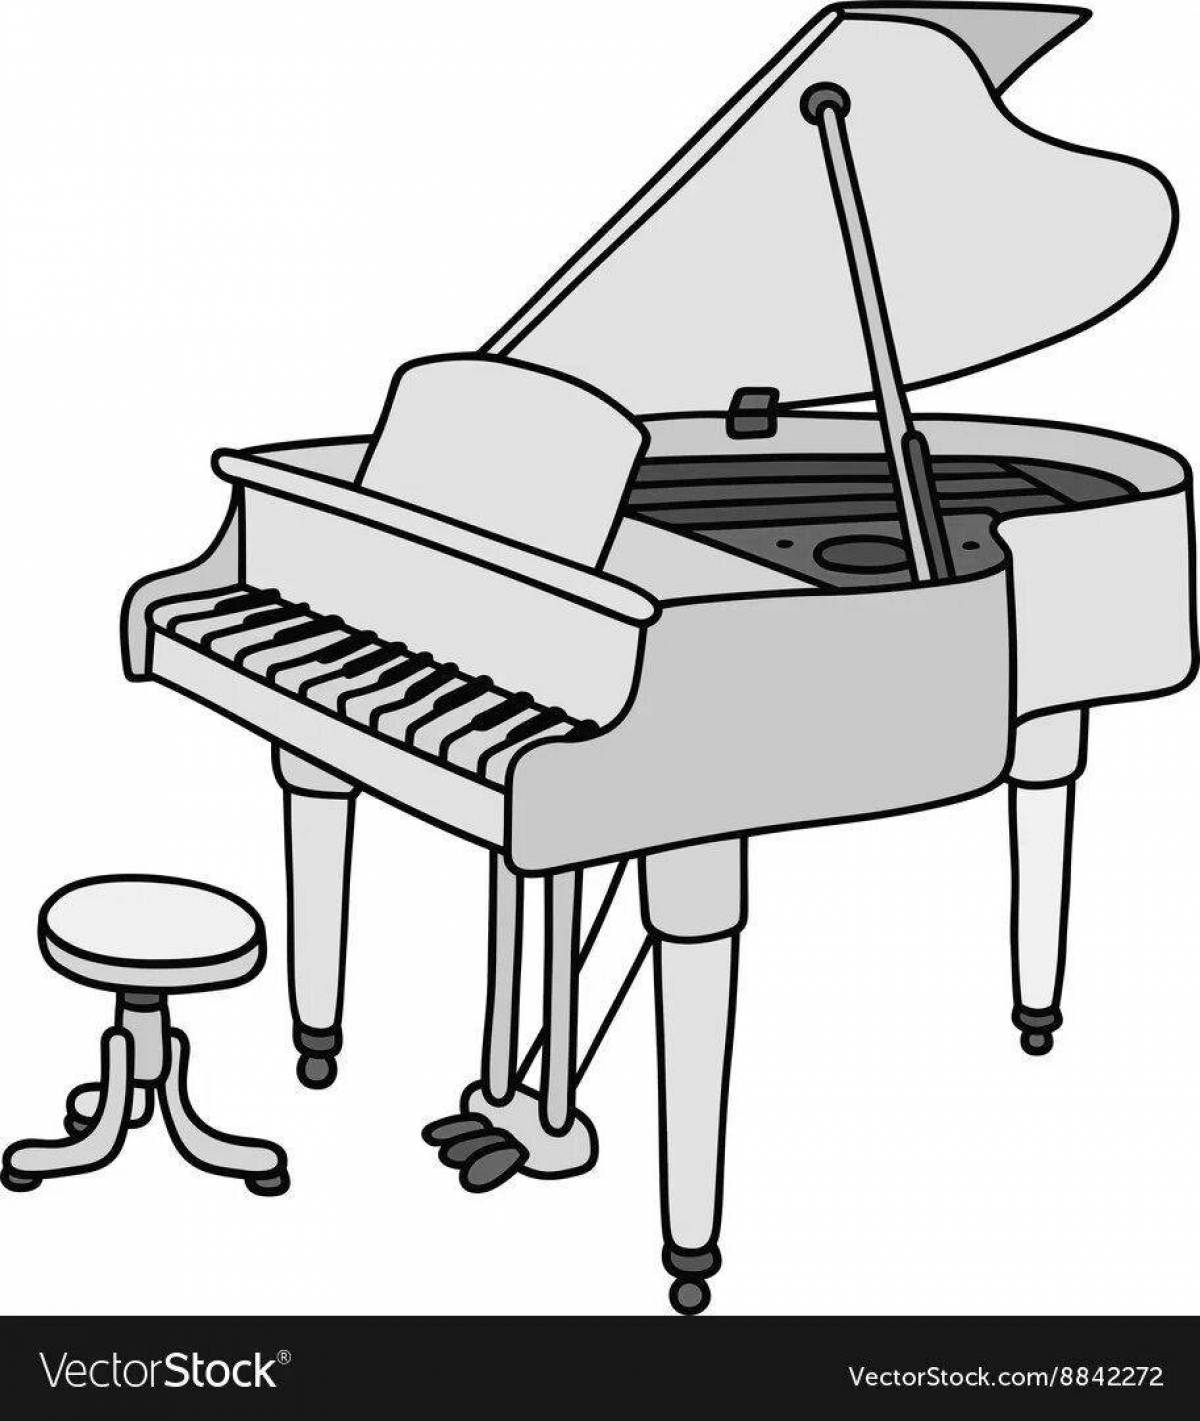 Веселая страница раскраски фортепиано для детей